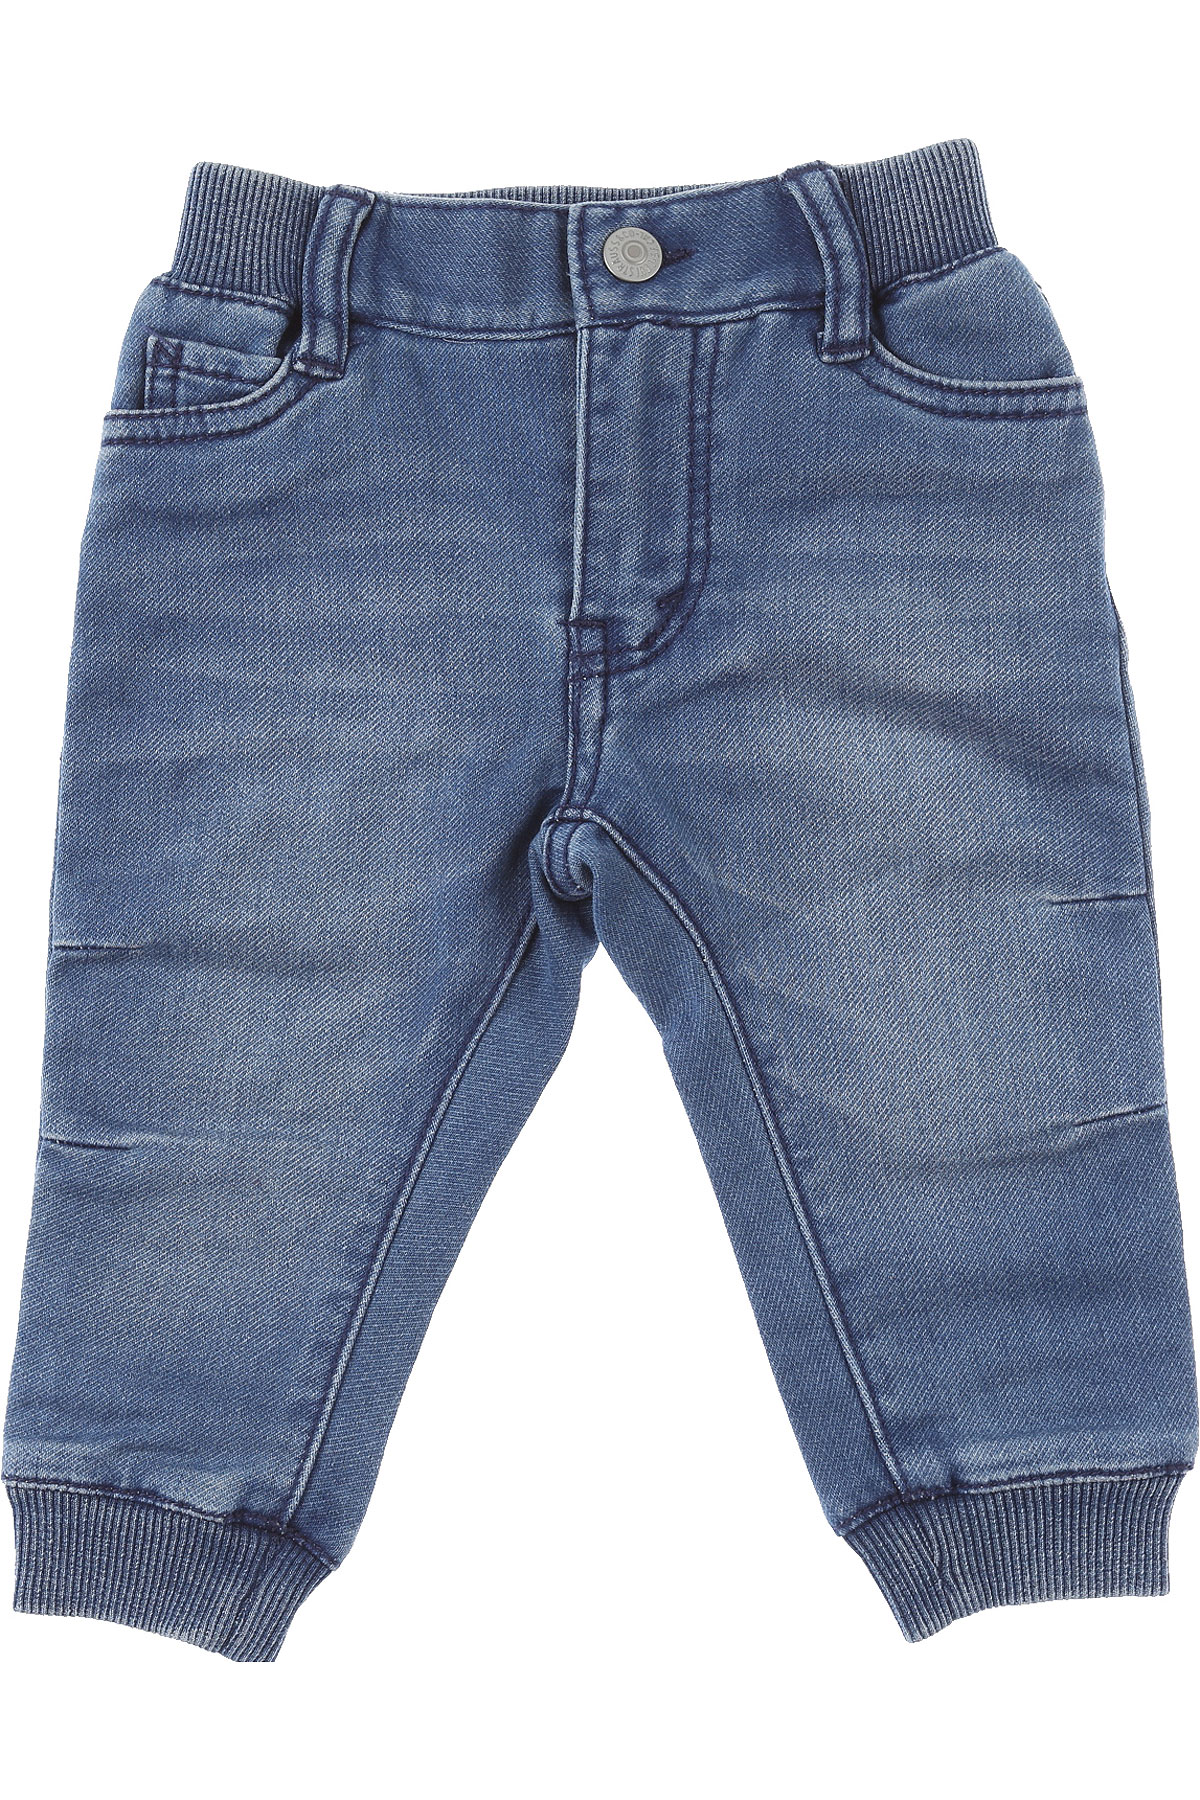 Levis Baby Jeans für Jungen Günstig im Sale, Denim Blau, Baumwolle, 2017, 18 M 2Y